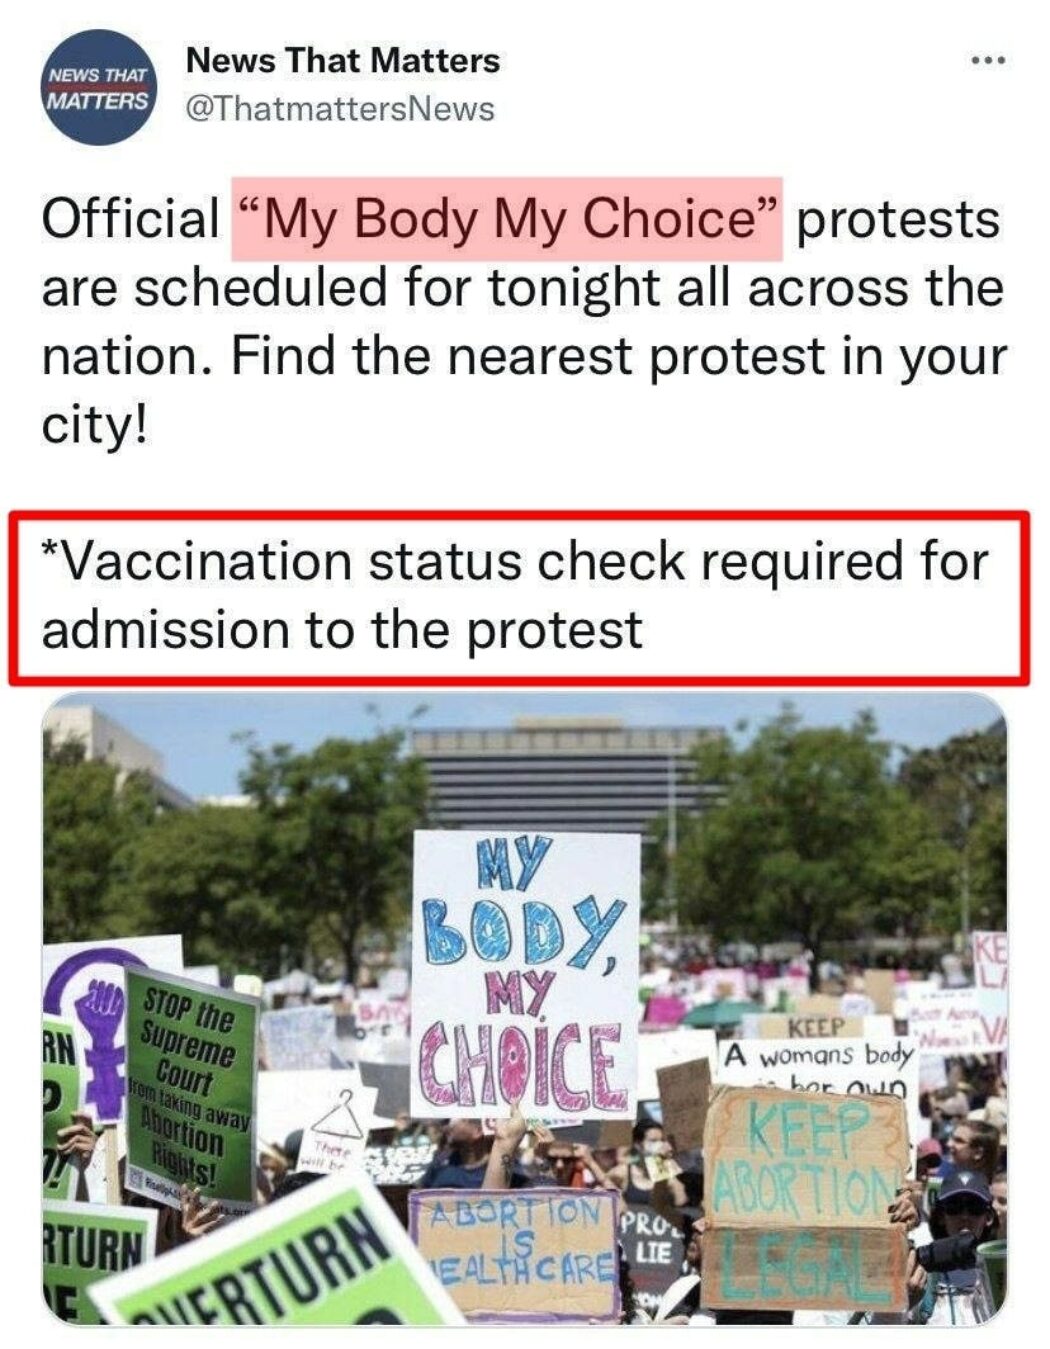 “Mon corps, mon choix”, sauf pour le vaccin